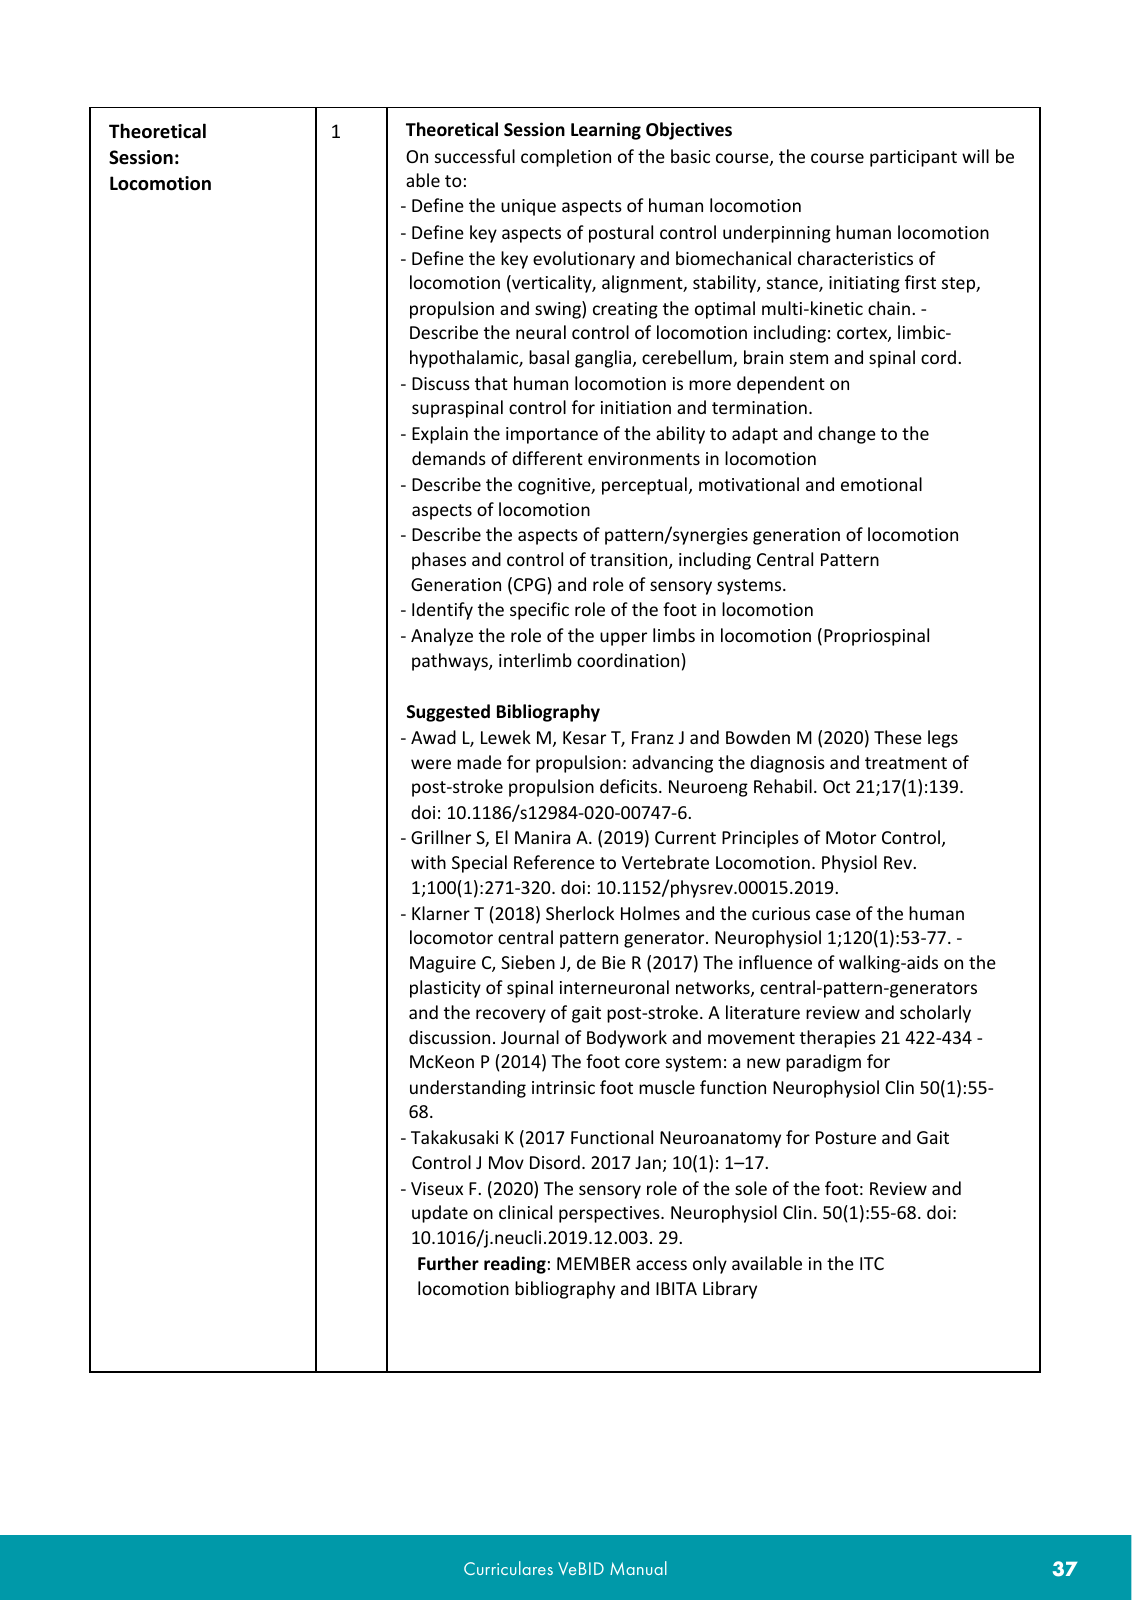 Vorschau VeBID Curriculum 2022 Seite 37